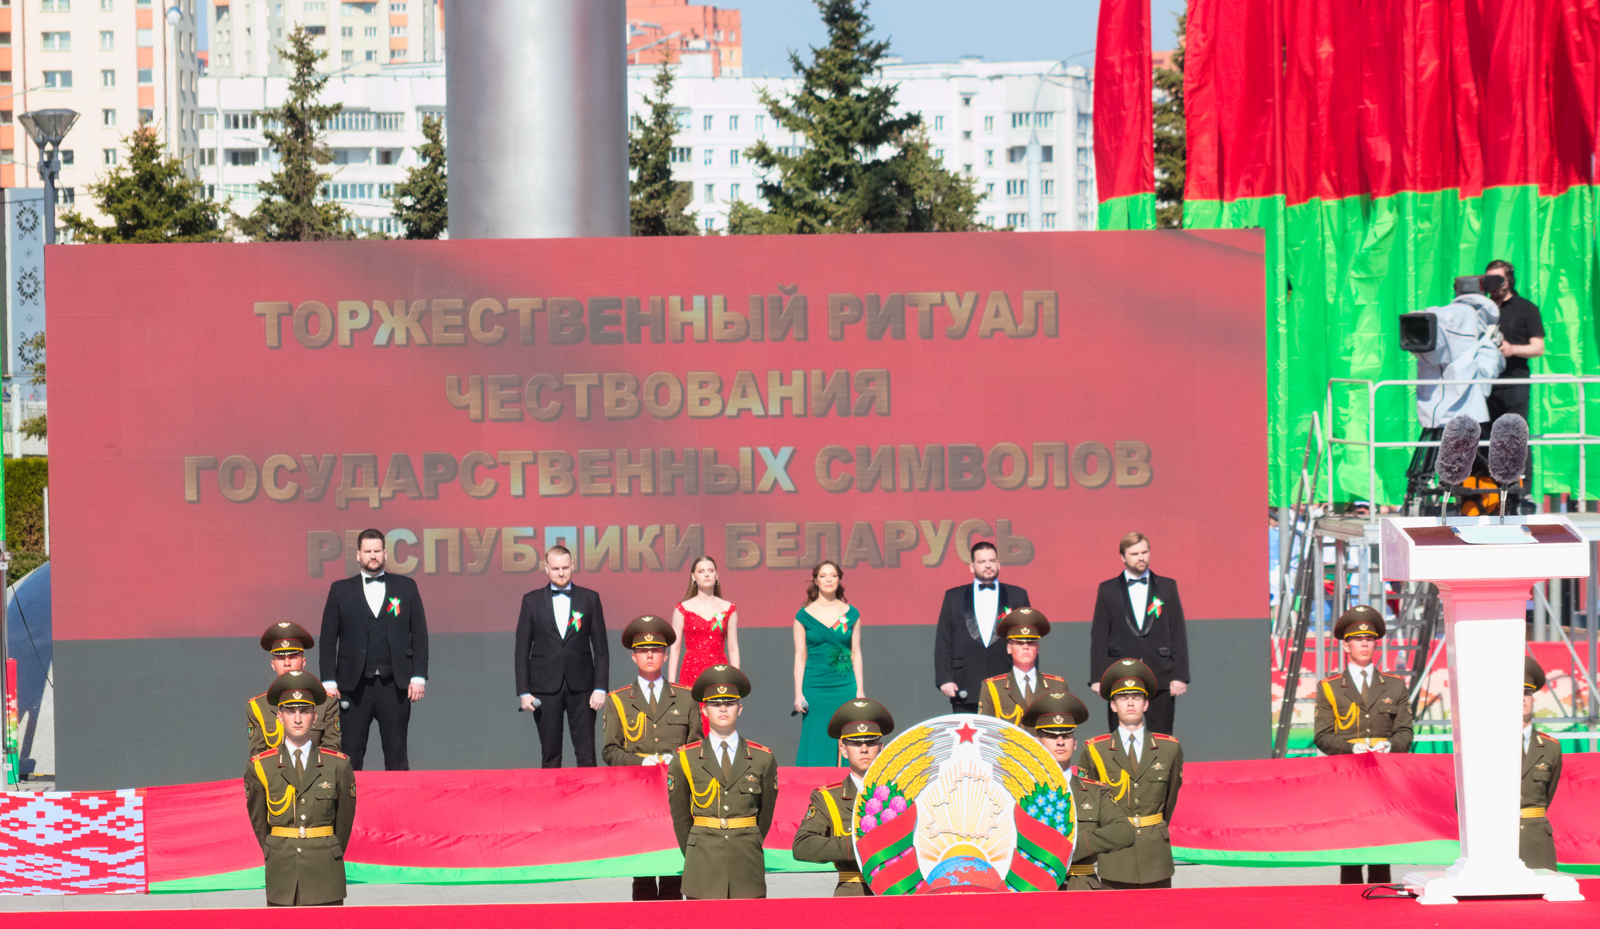 Уважаемые коллеги! Дорогие друзья!
Министерство экономики поздравляет Вас с Днем Государственного флага, Государственного герба и Государственного гимна Республики Беларусь!